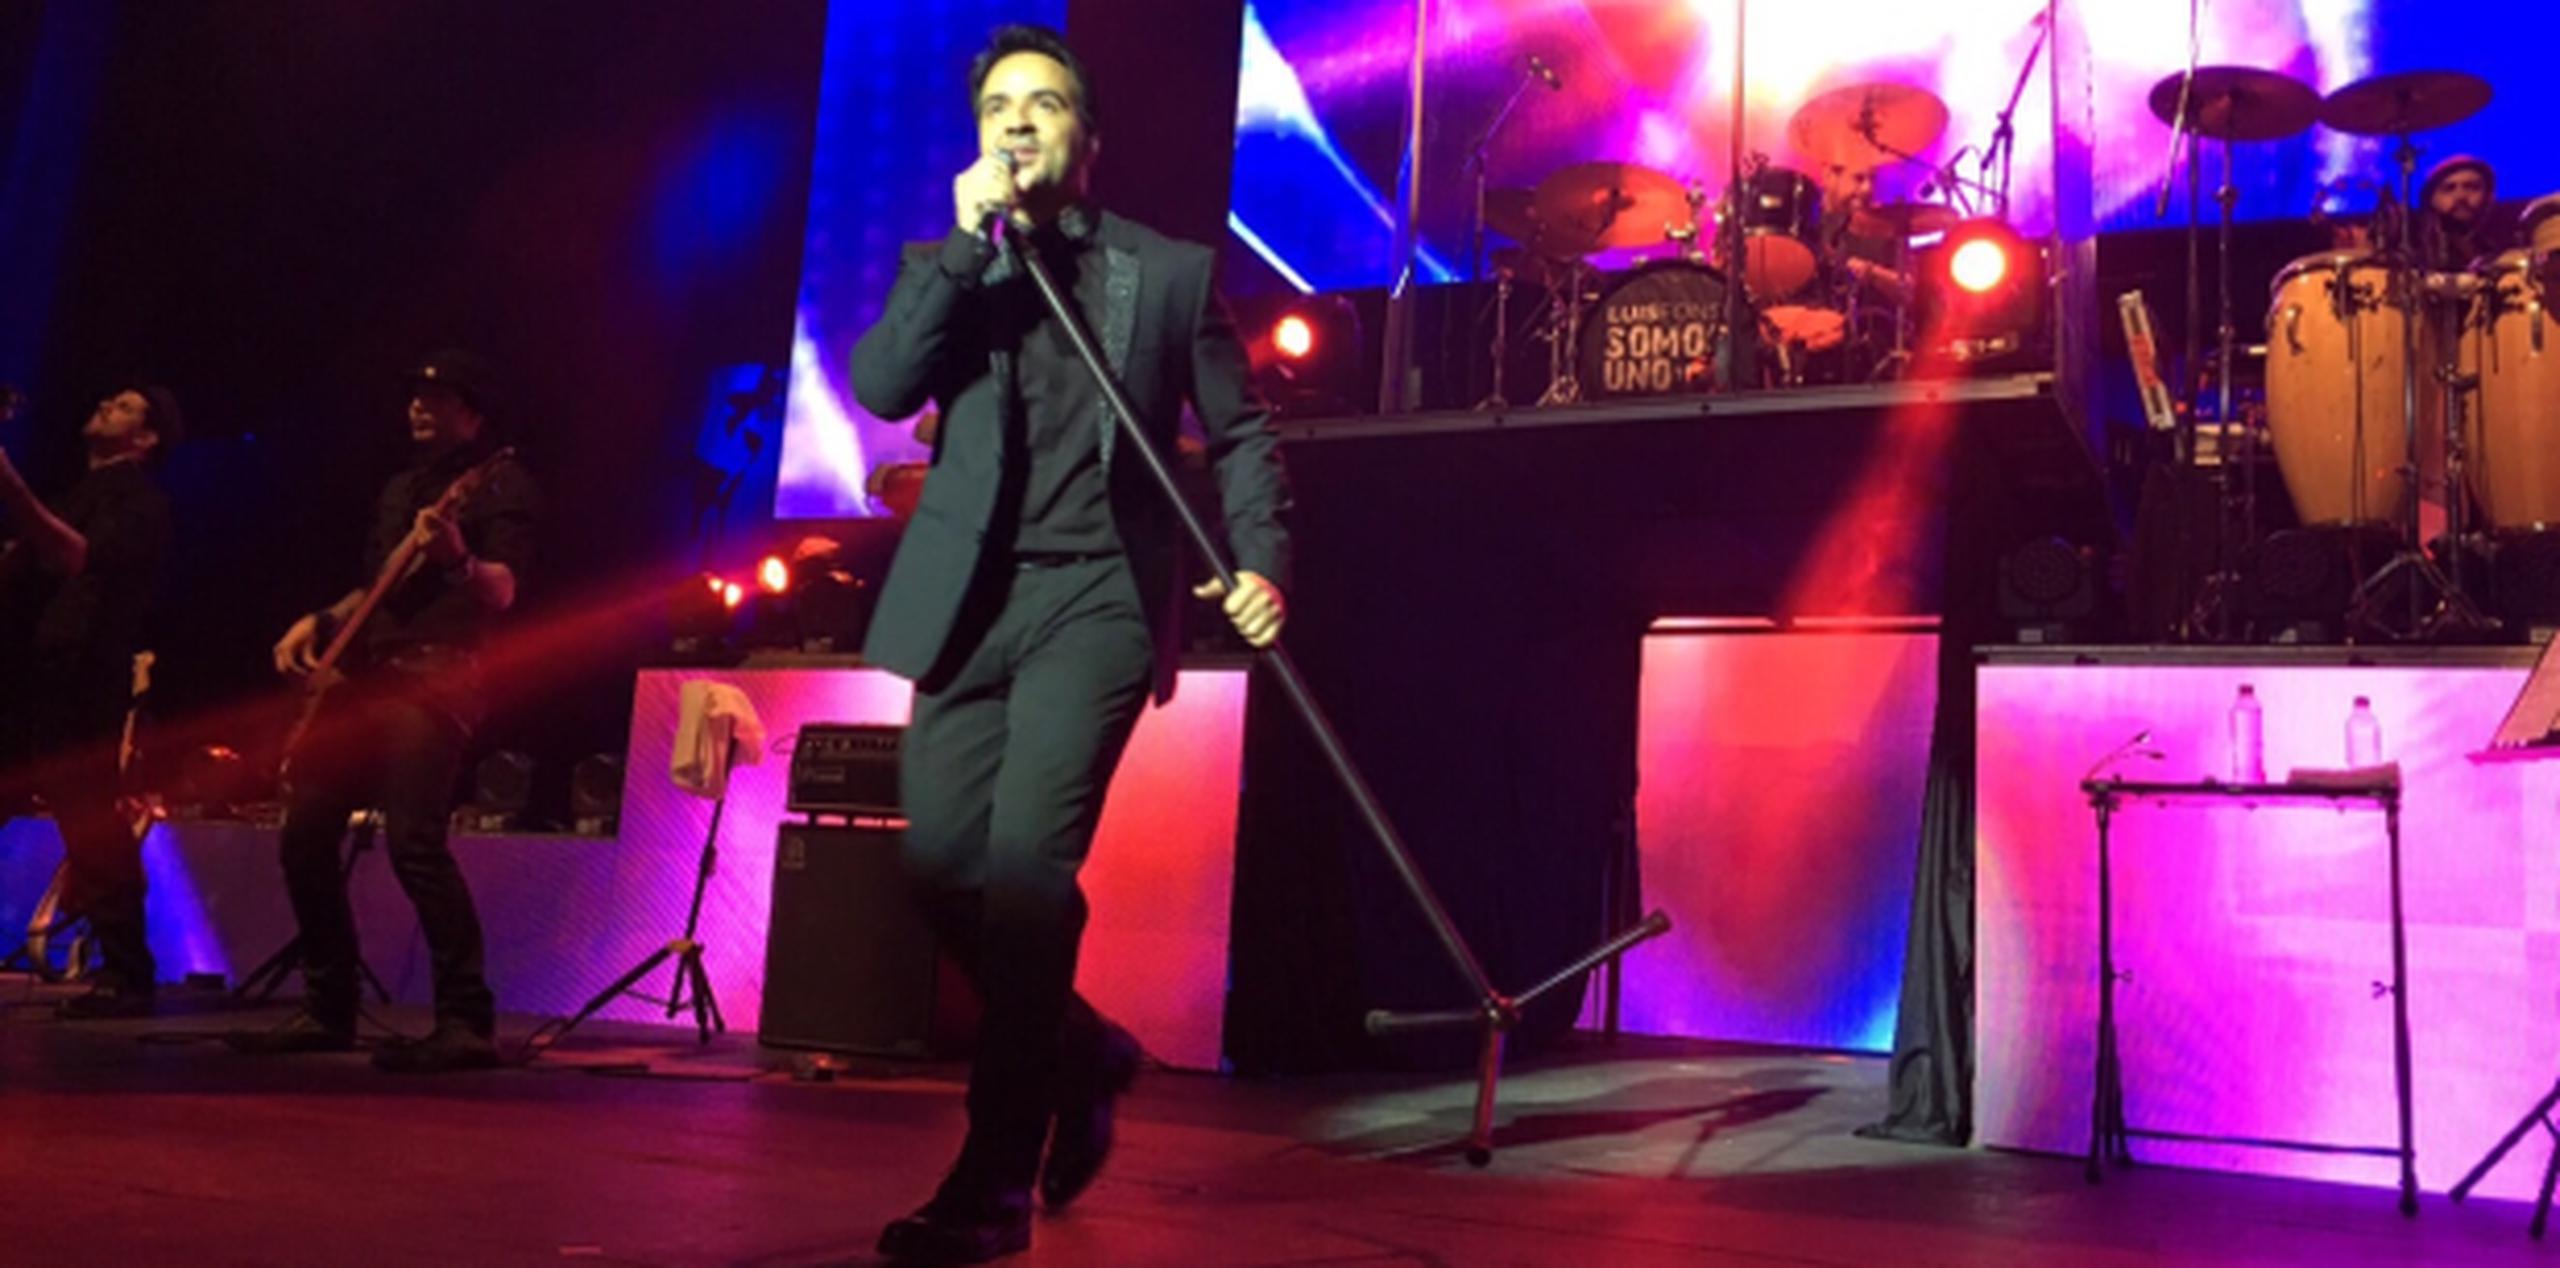 El cantante Luis Fonsi se presentó en el emblemático estadio Luna Park, en Buenos Aires. (Suministrada)